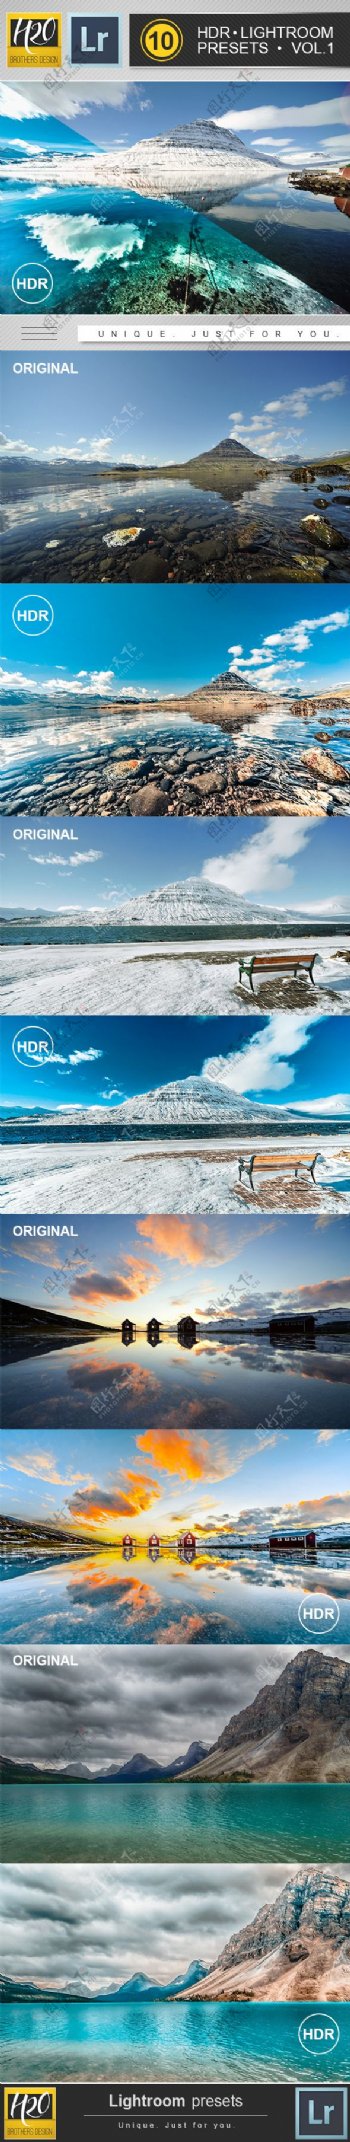 10款风景照片质感HDR效果PS动作